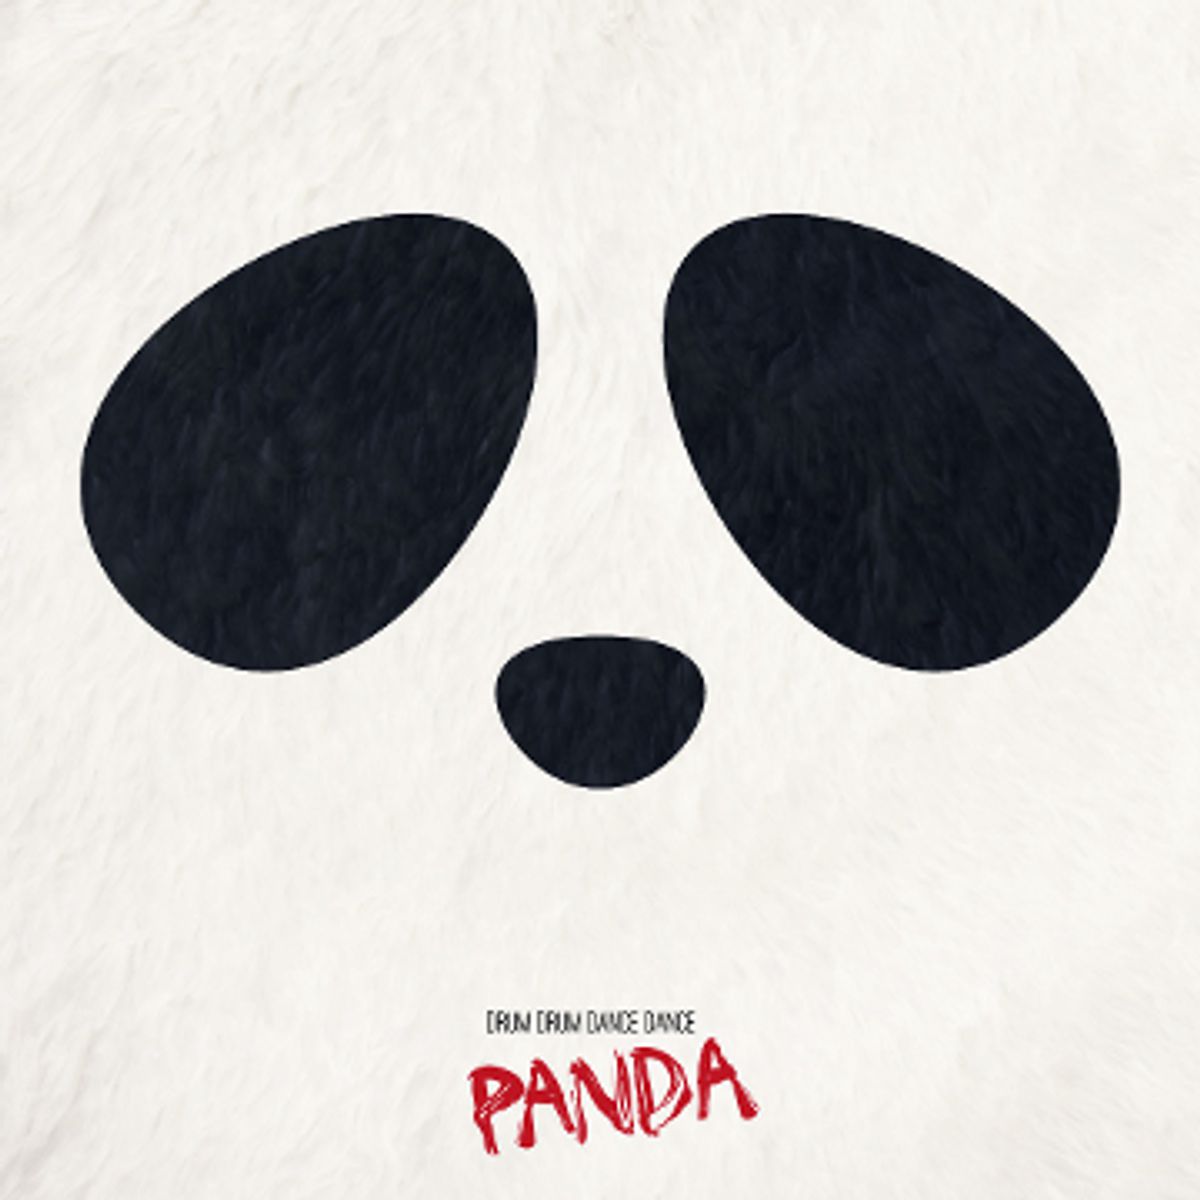 Drum Drum Dance Dance - 'Panda'